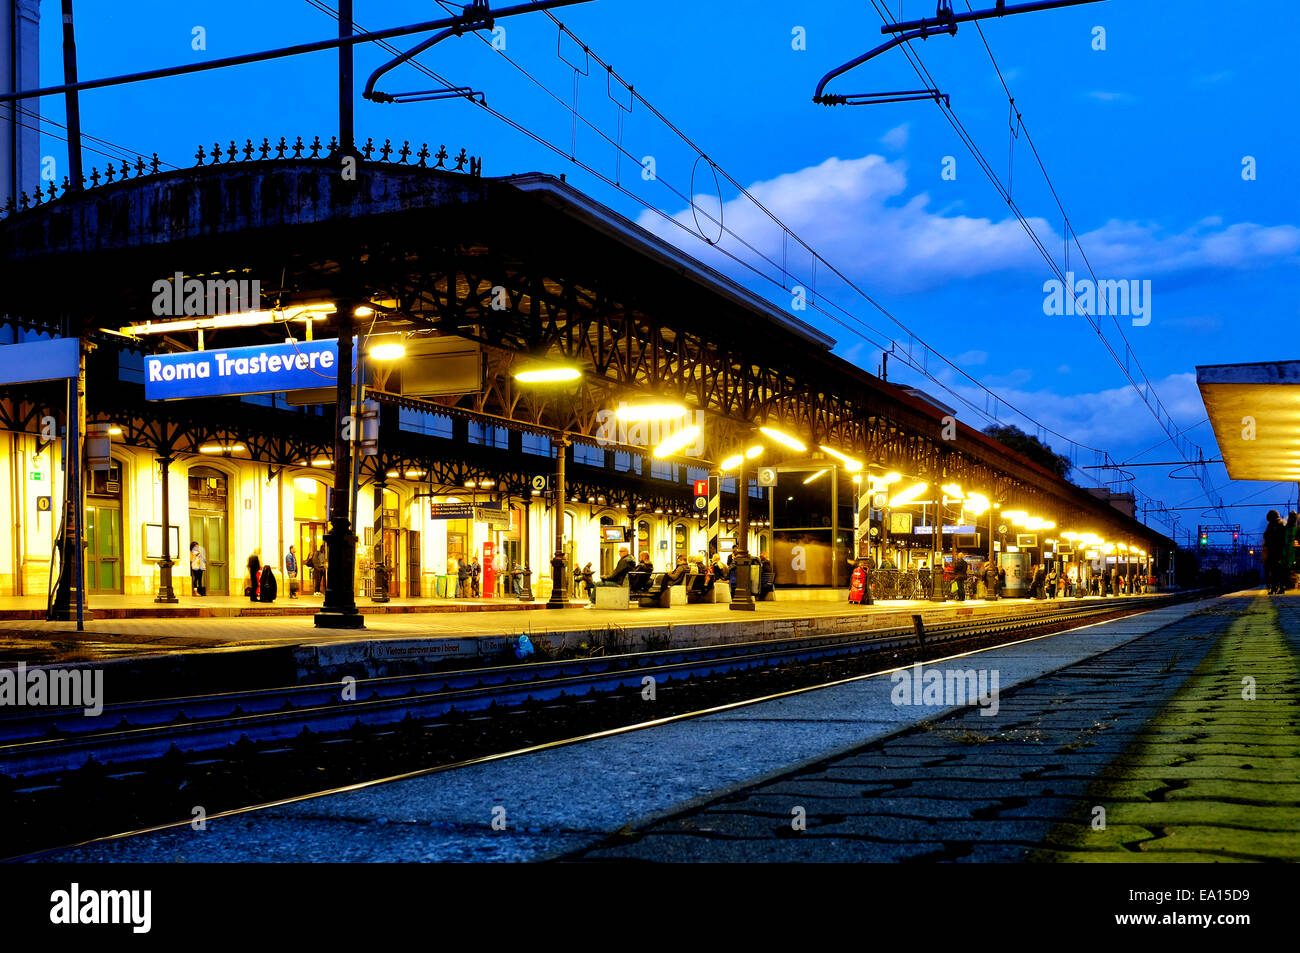 Stazione di Roma Trastevere, Rome, Italy Stock Photo